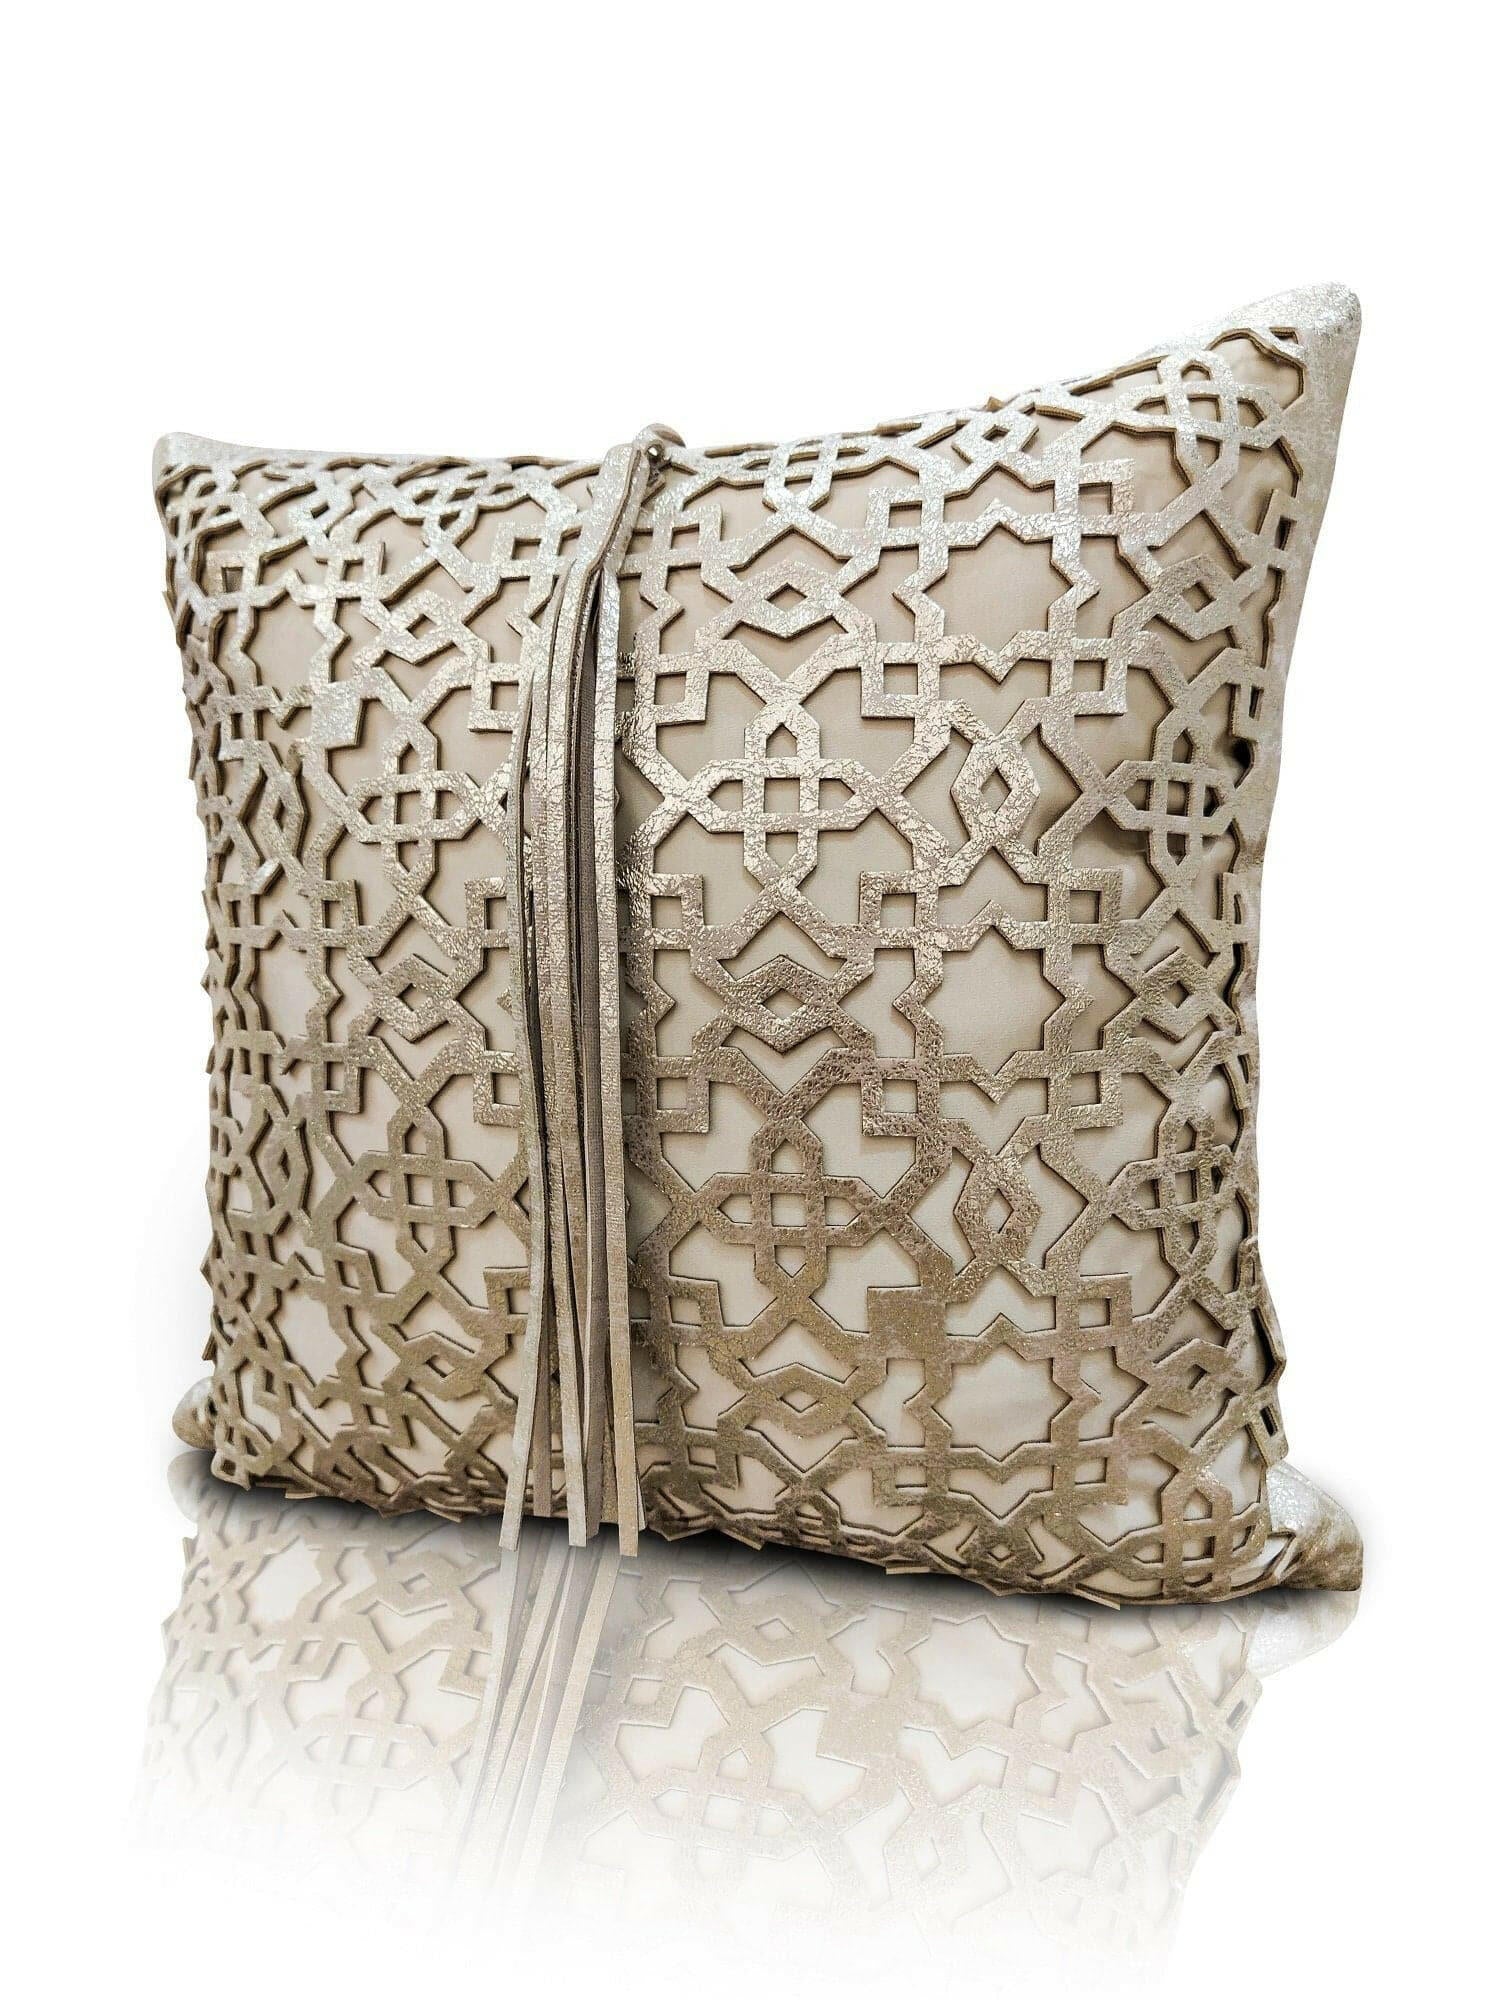 Ottoman Cushion Cover - Creative Home Designs Pillowcases, Turkish Throw Pillows & Shams, Gold Color Cut Out Geometric Pattern Sham,CC-CH-OTMN-Go-1S1R,CC-CH-OTMN-Go-2S,CC-CH-OTMN-Go-2R,CC-CH-OTMN-Go-2S1R